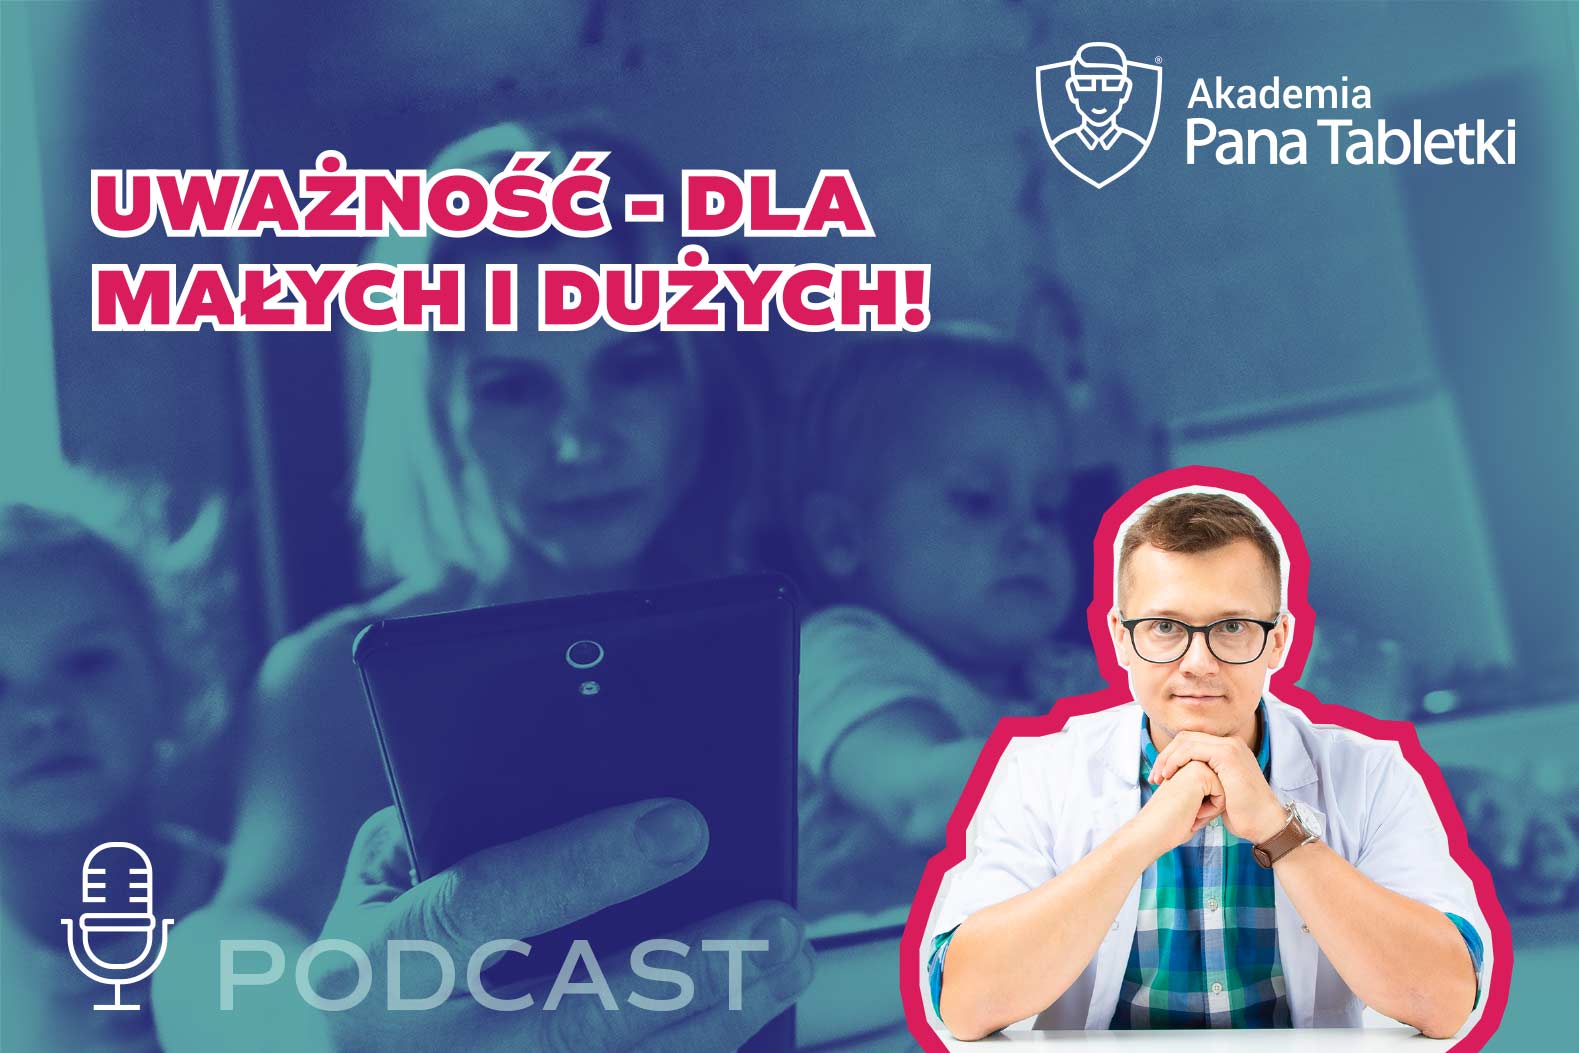 "Uważność dziecka" - jak może pomóc Twojej rodzinie? Podcast 49